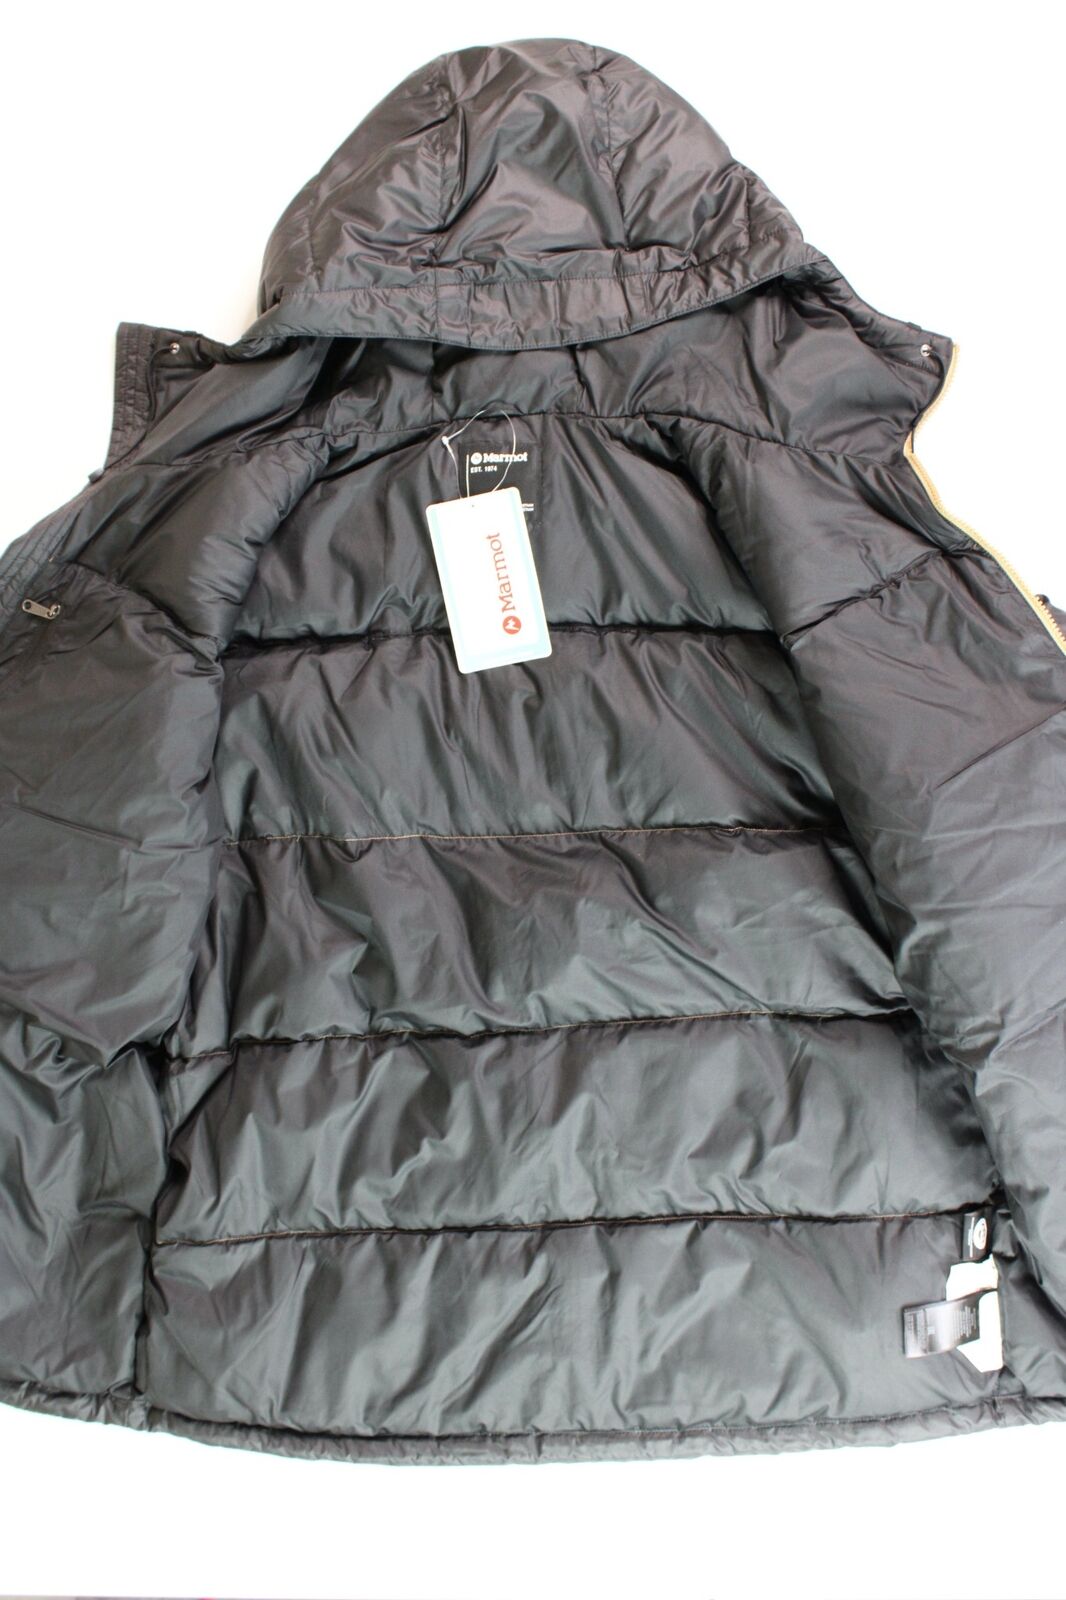 Marmot Men's Guides Down Puffer Jacket XL Shetland Tan / Black